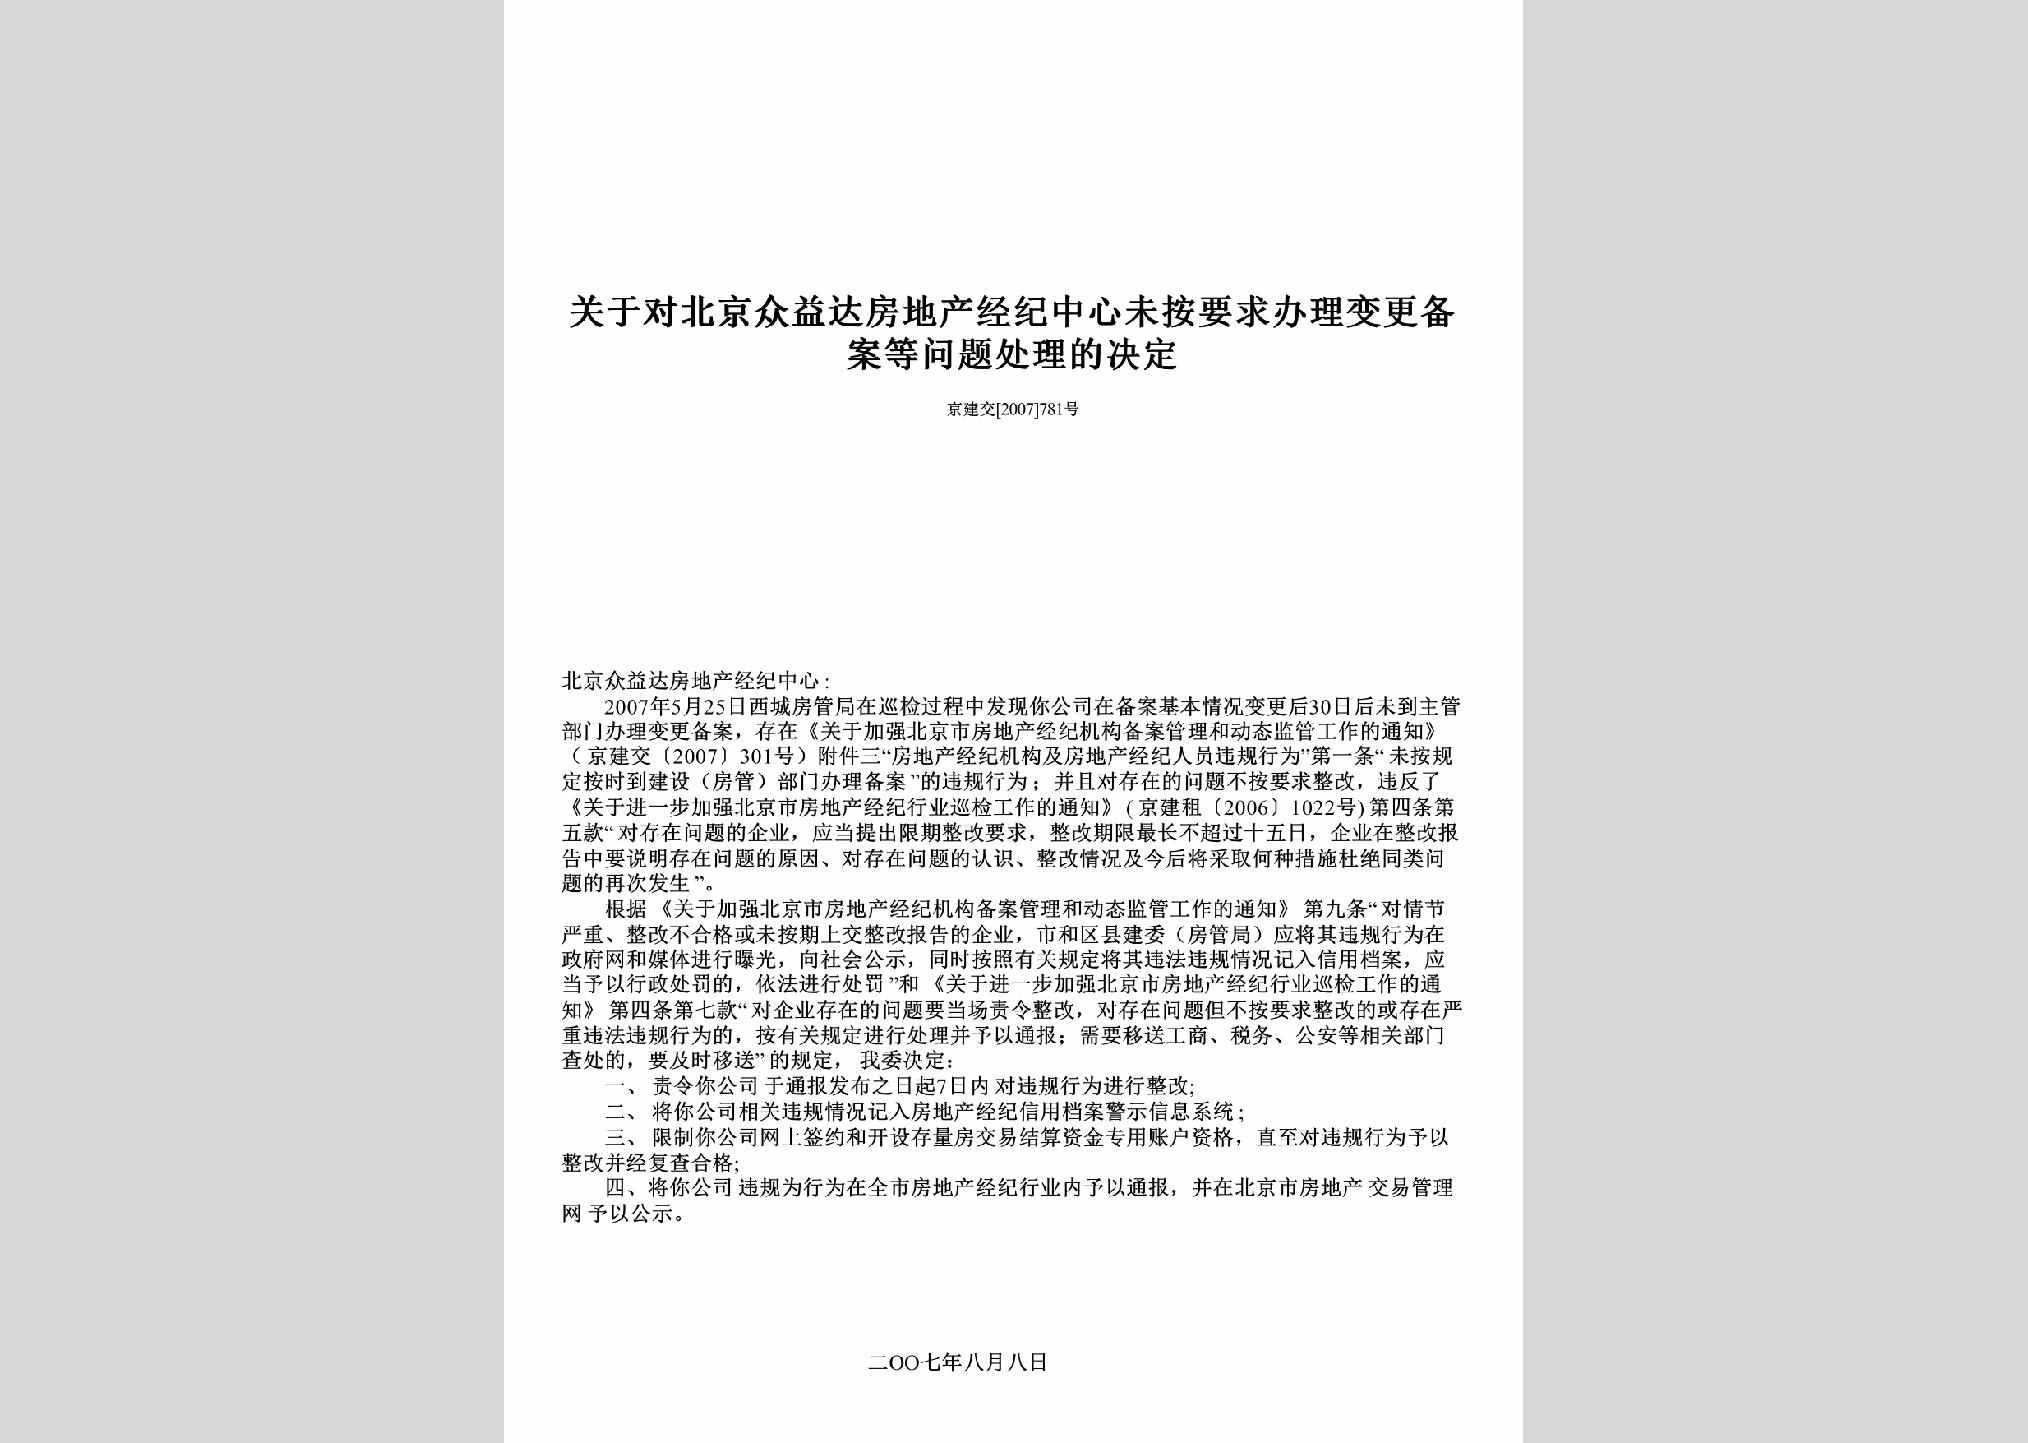 京建交[2007]781号：关于对北京众益达房地产经纪中心未按要求办理变更备案等问题处理的决定